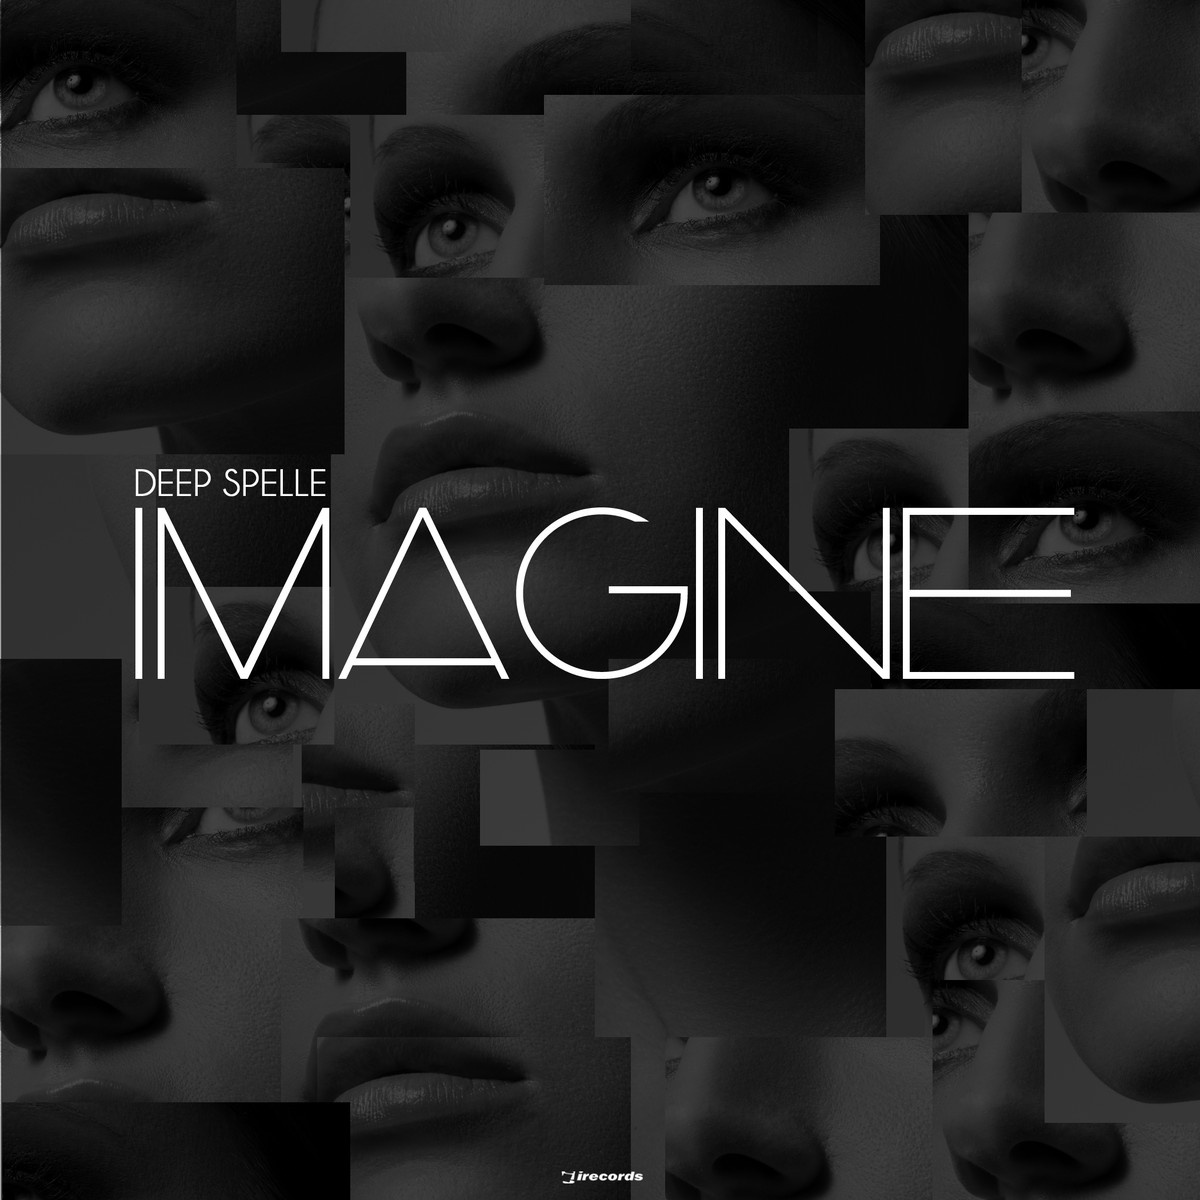 Imagine (Original Mix)